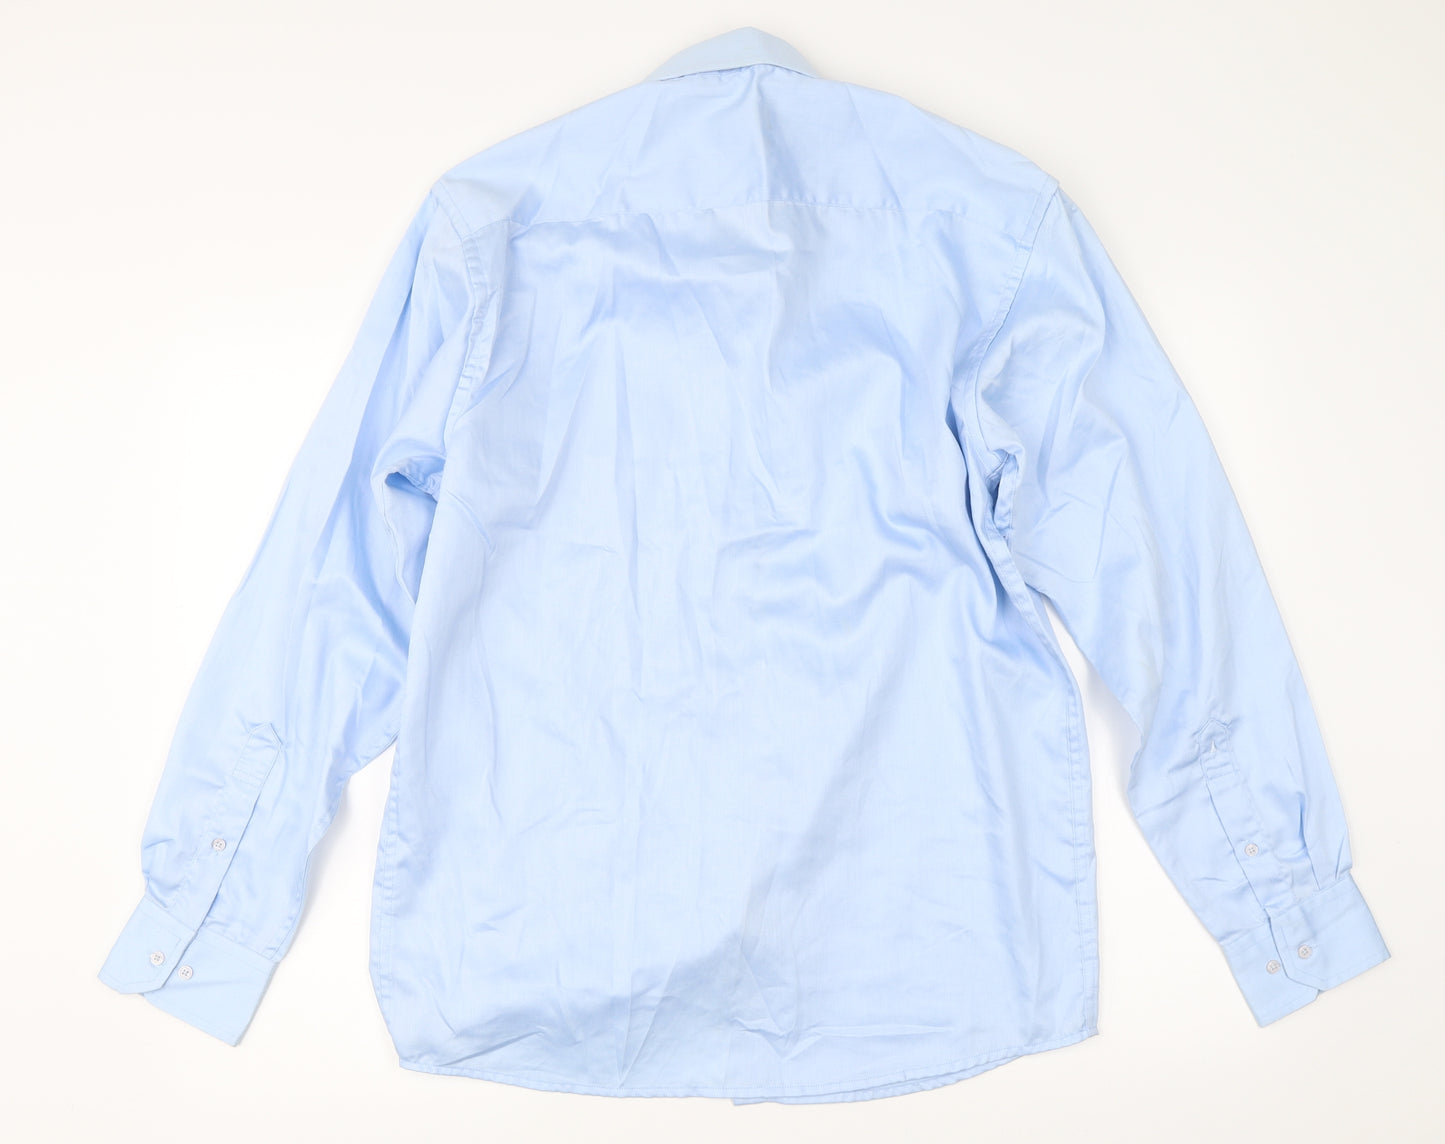 Auburn Hill Mens Blue    Dress Shirt Size 15.5